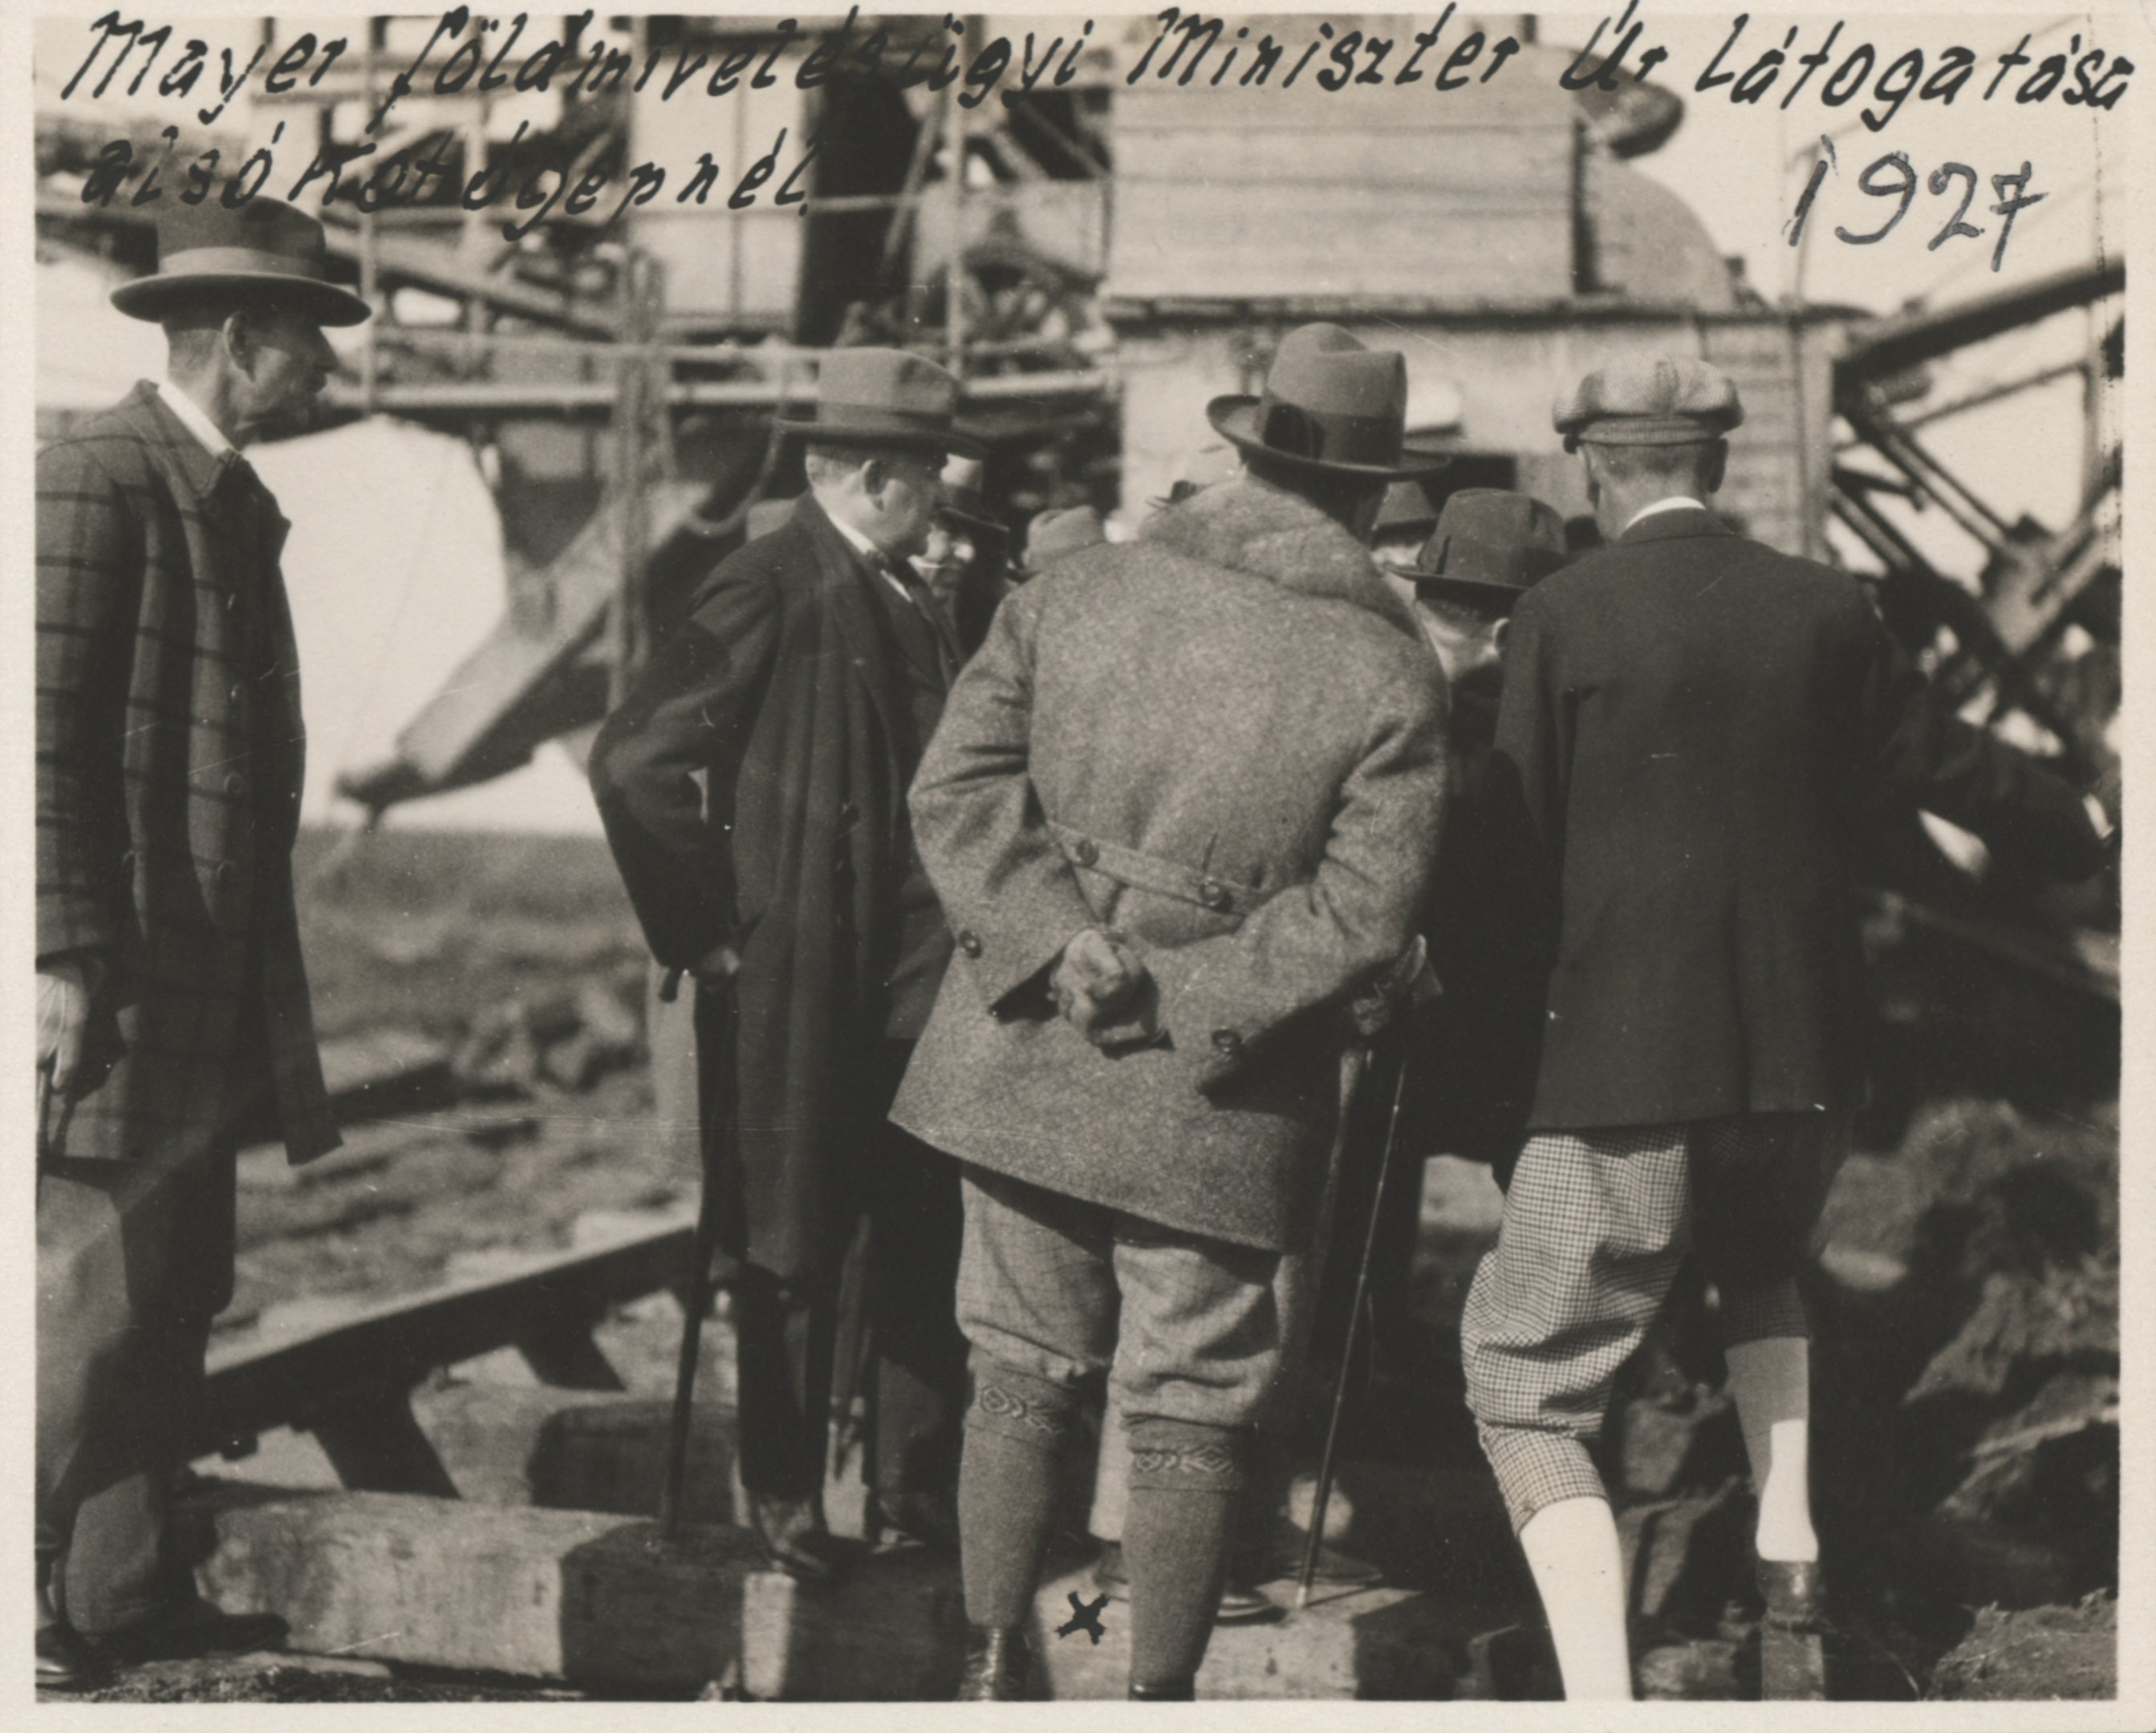 Mayer földmívelésügyi miniszter Úr látogatása az alsó kotrógépnél, 1927 (Magyar Környezetvédelmi és Vízügyi Múzeum - Duna Múzeum CC BY-NC-SA)